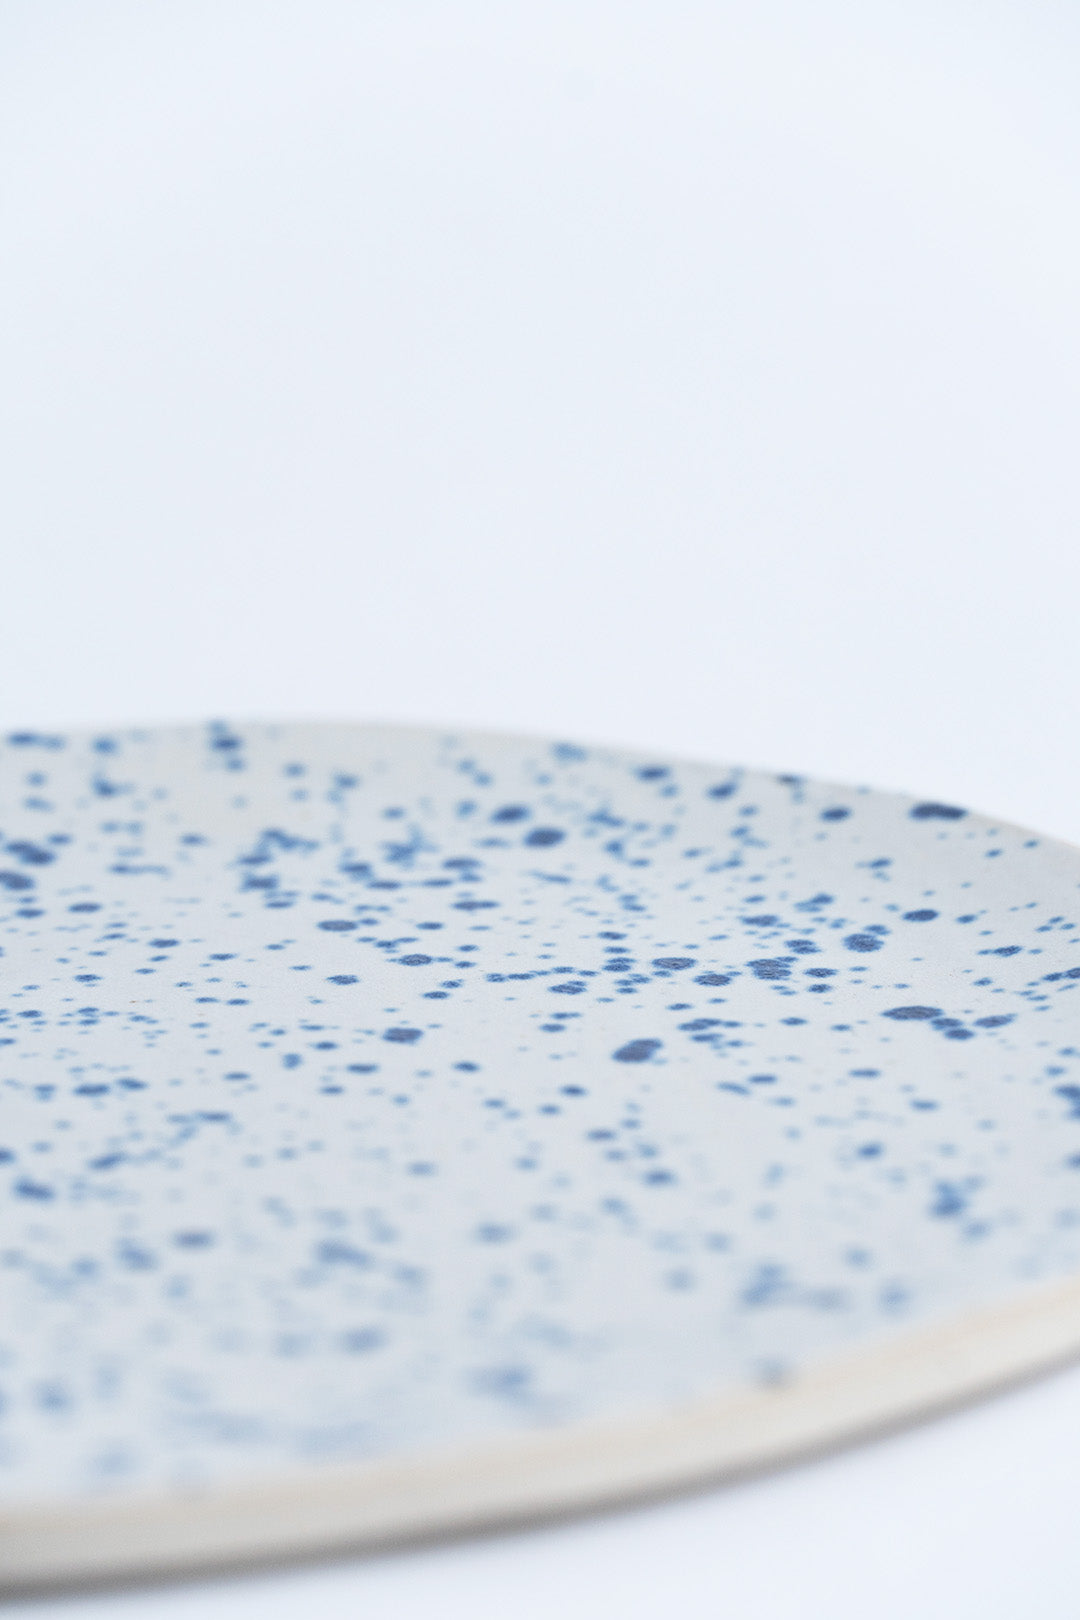 Speckeld Tapas Plate - Goki Ceramique